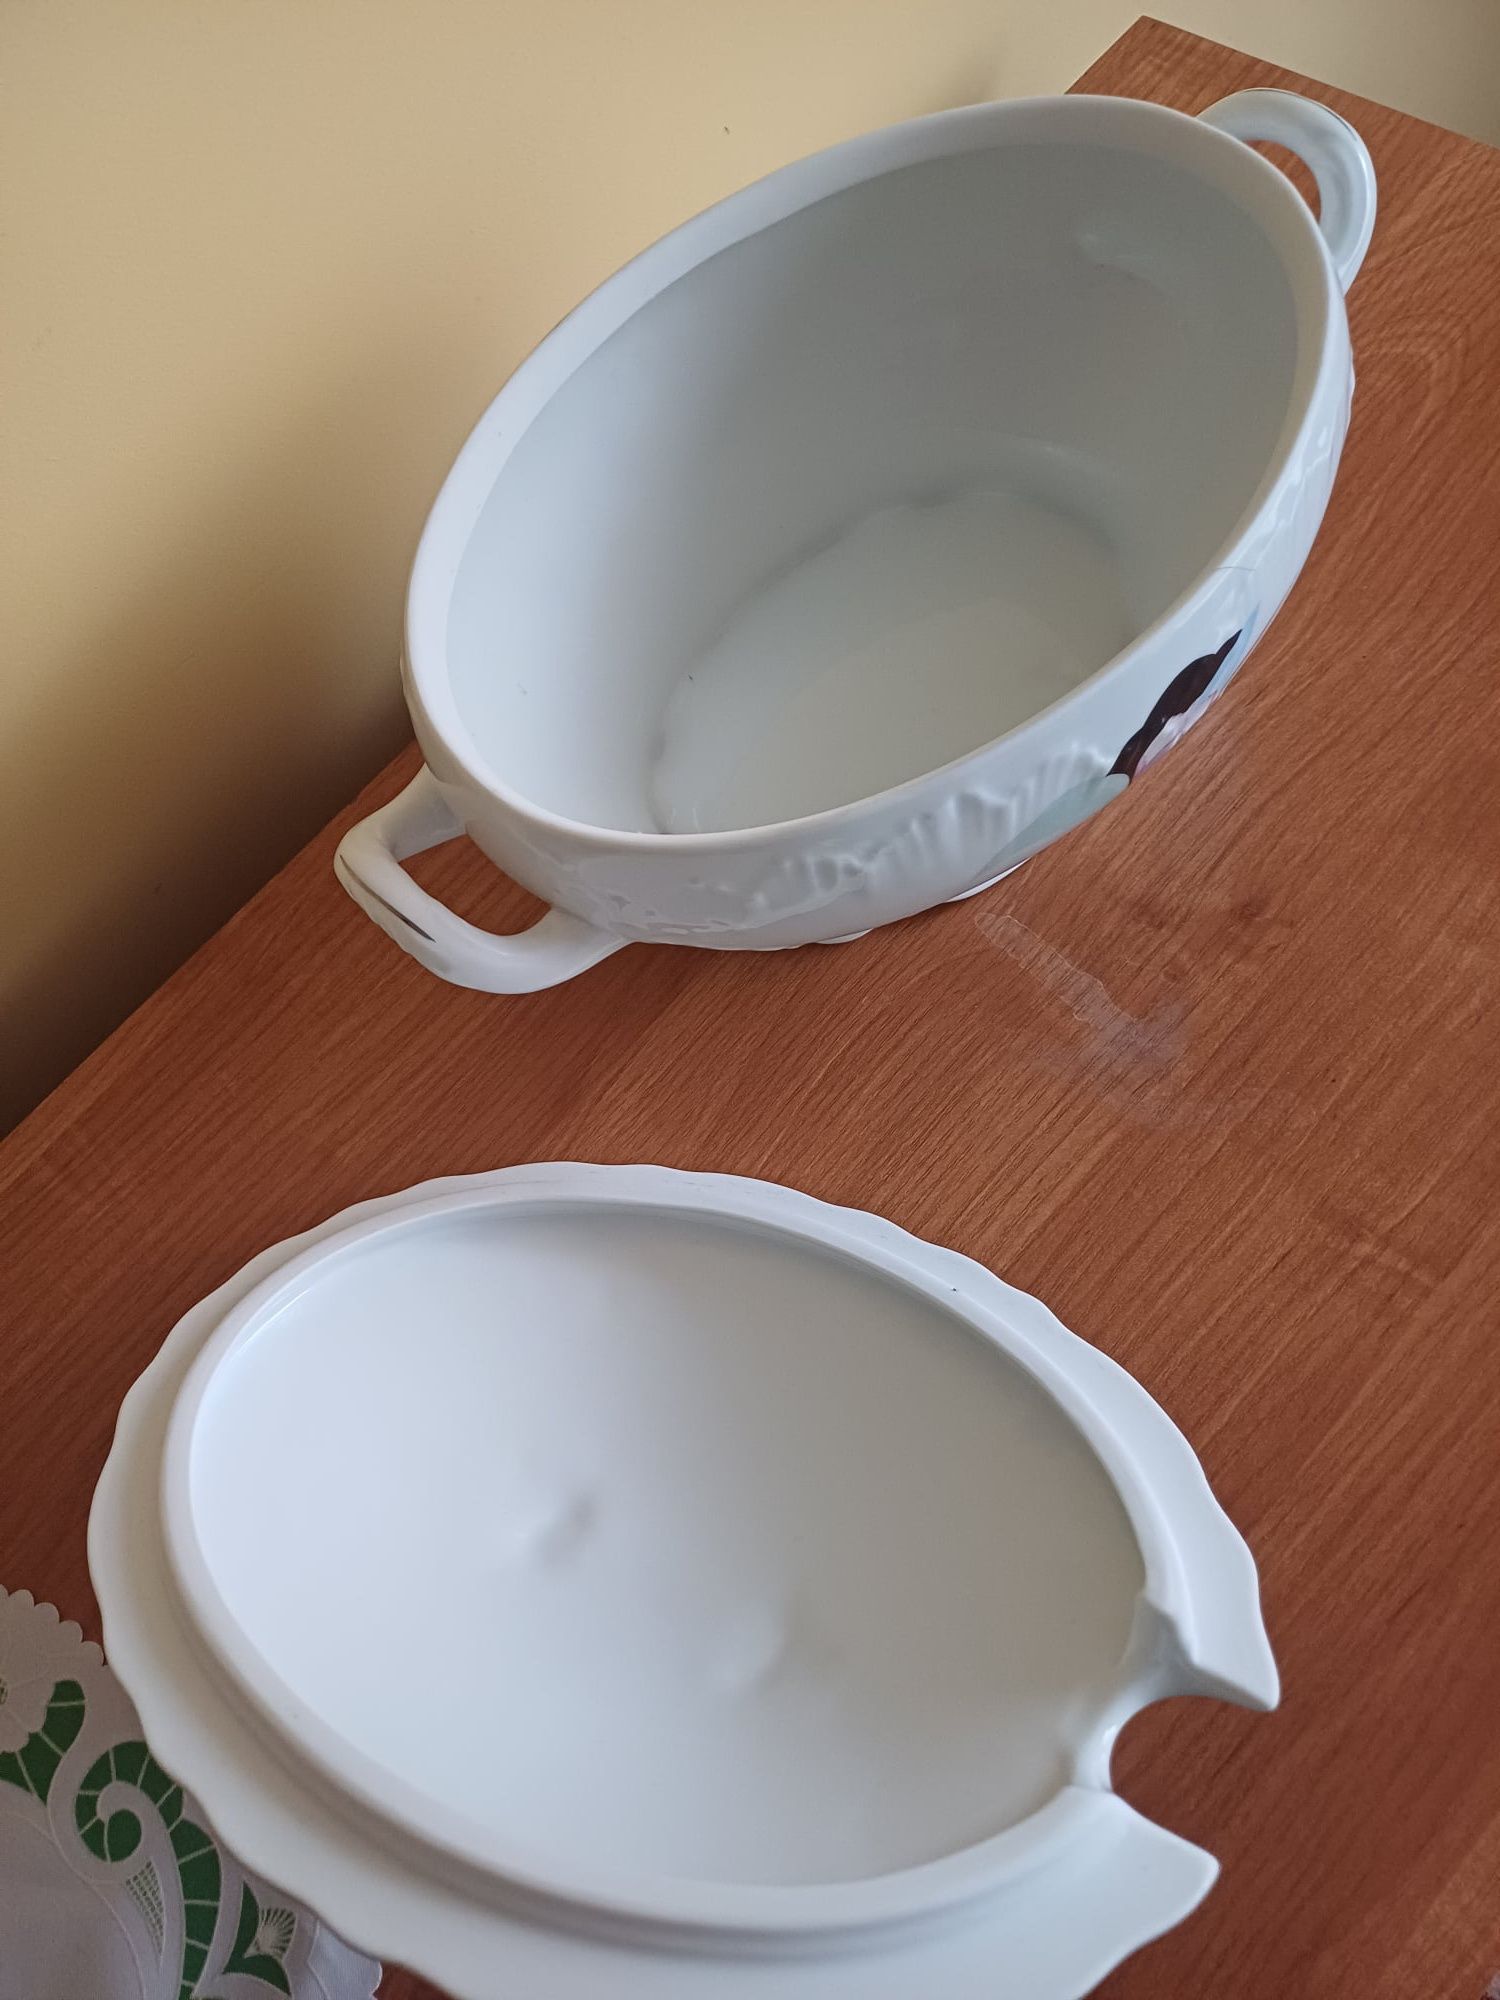 waza do zupy z porcelany - nowa